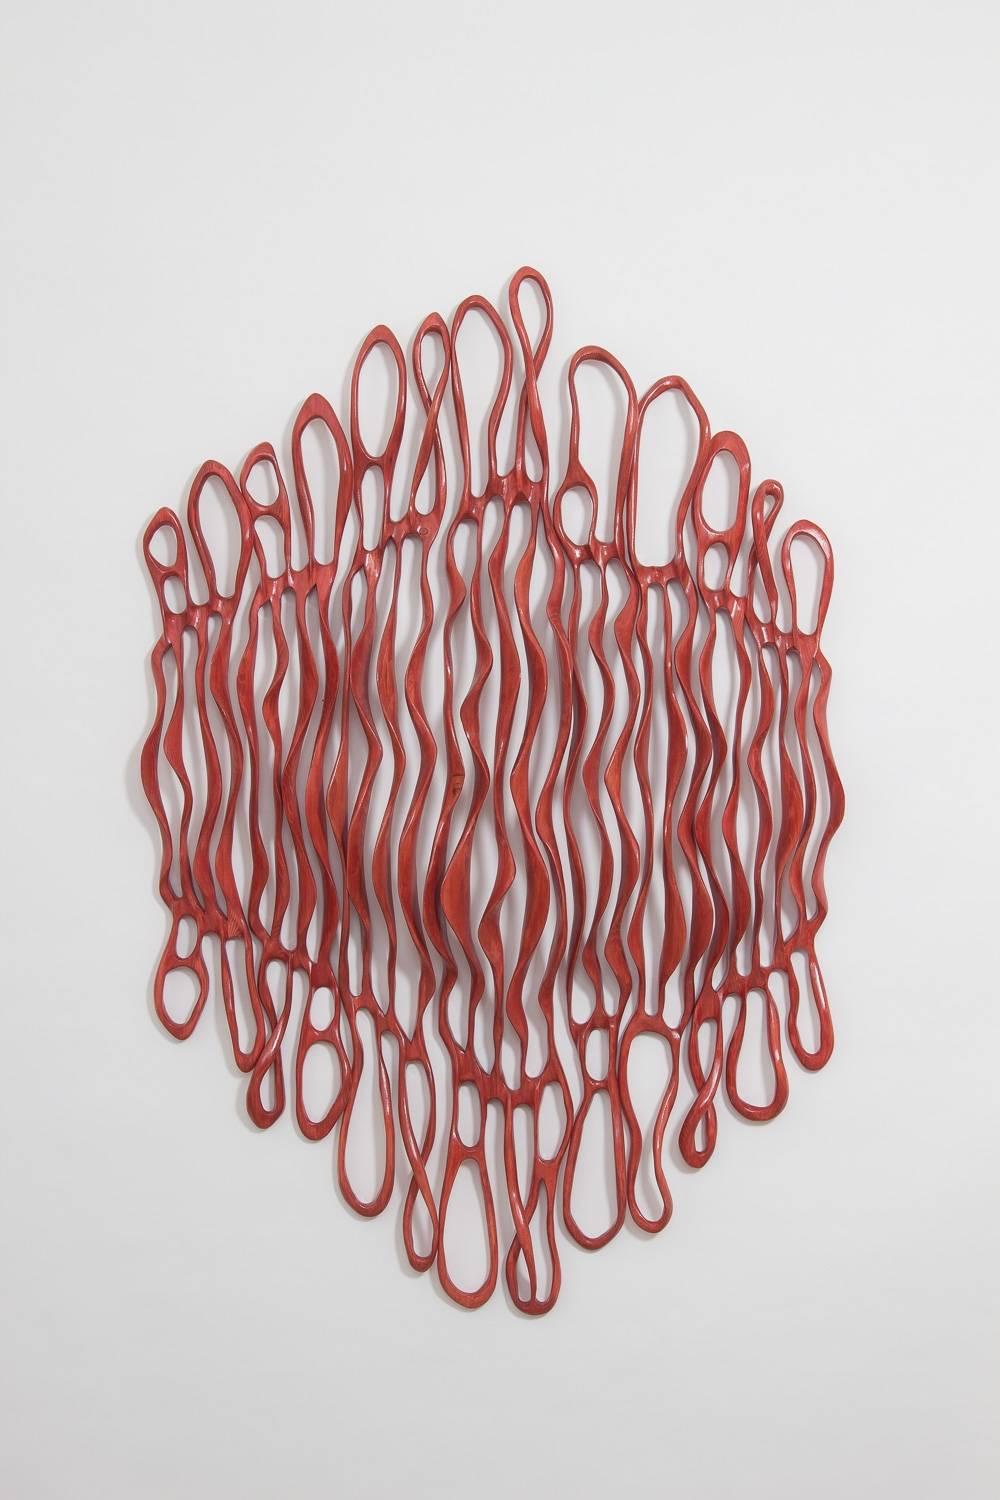 Red Dawn Cascade - Sculpture by Caprice Pierucci